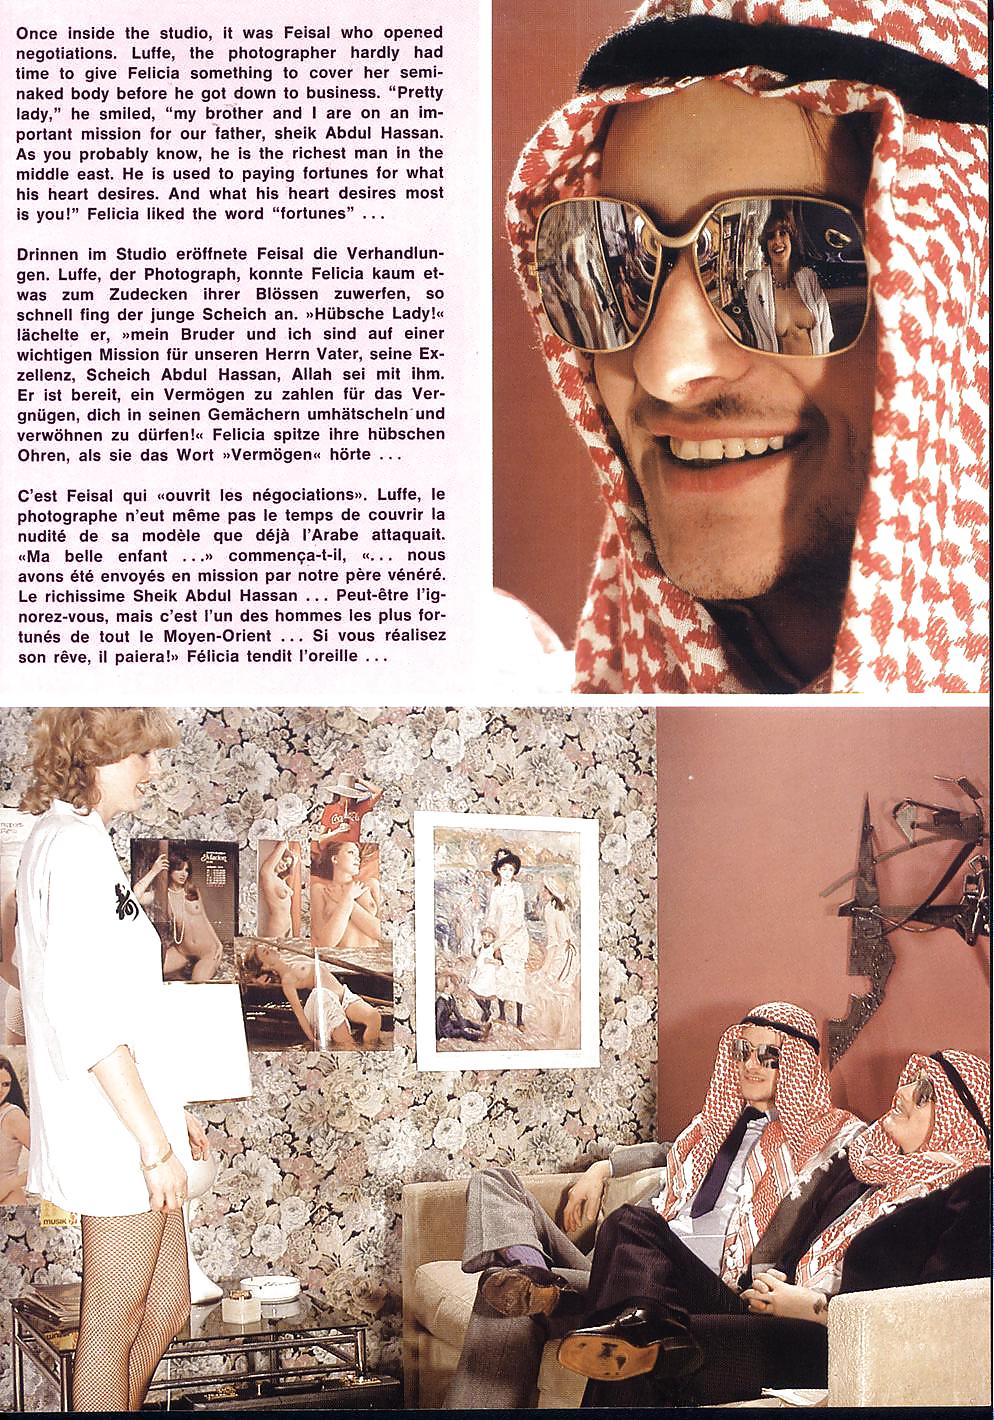 Inspiración #34 - revista vintage (1985)
 #11656757